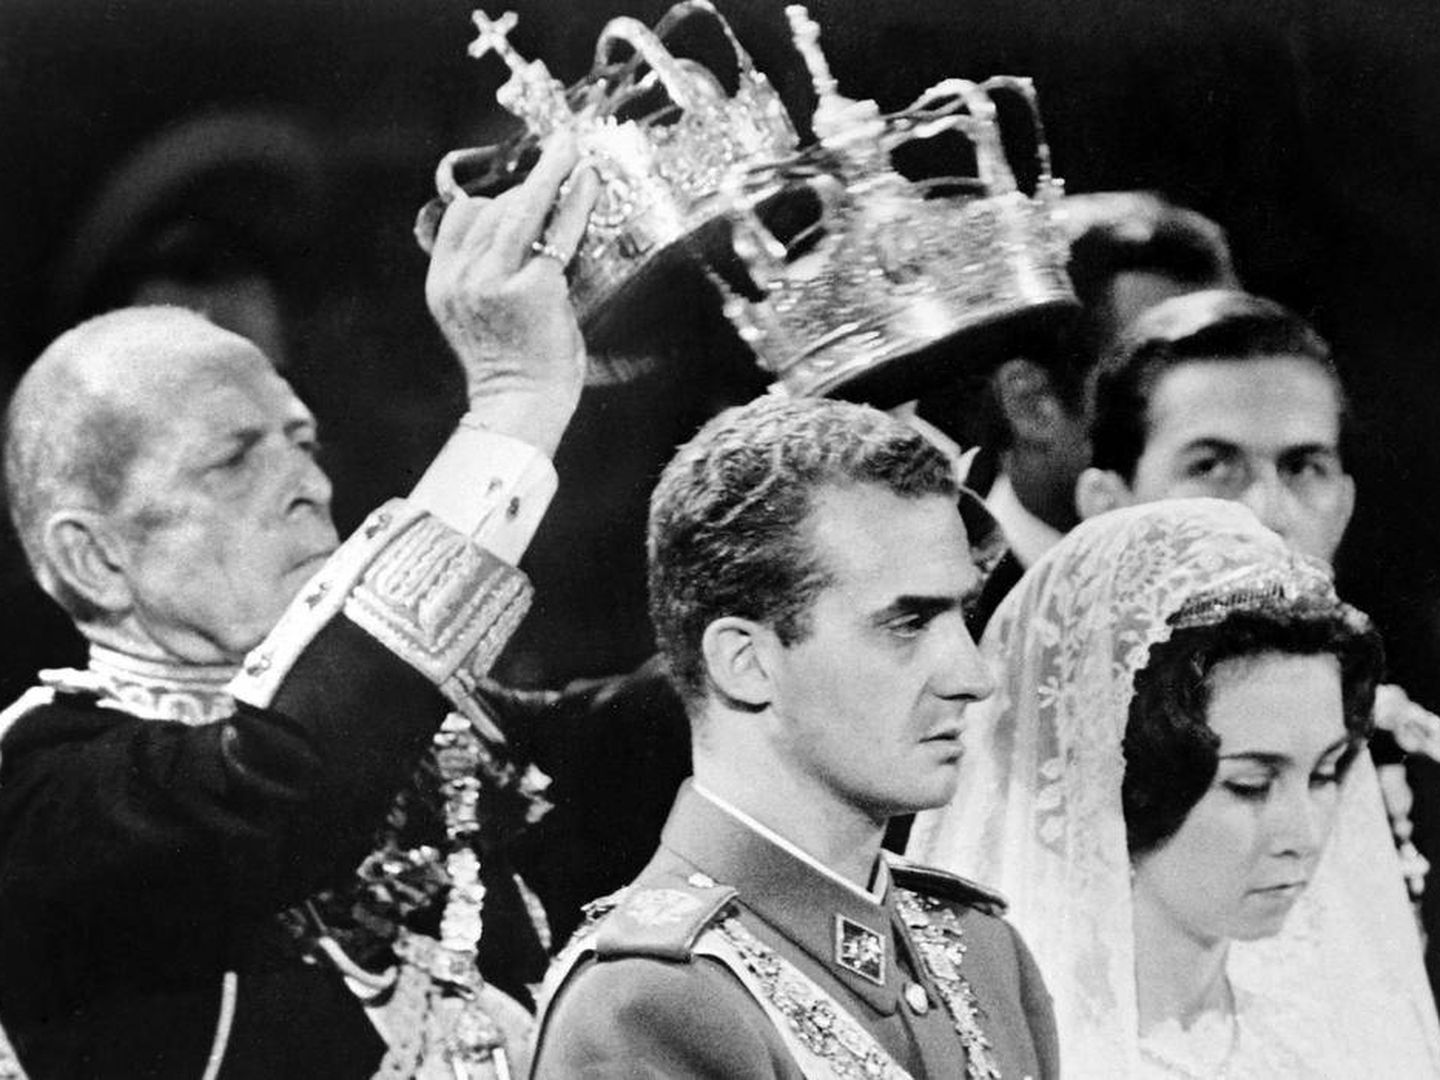 La boda de don Juan Carlos y doña Sofía. (Casa Real)